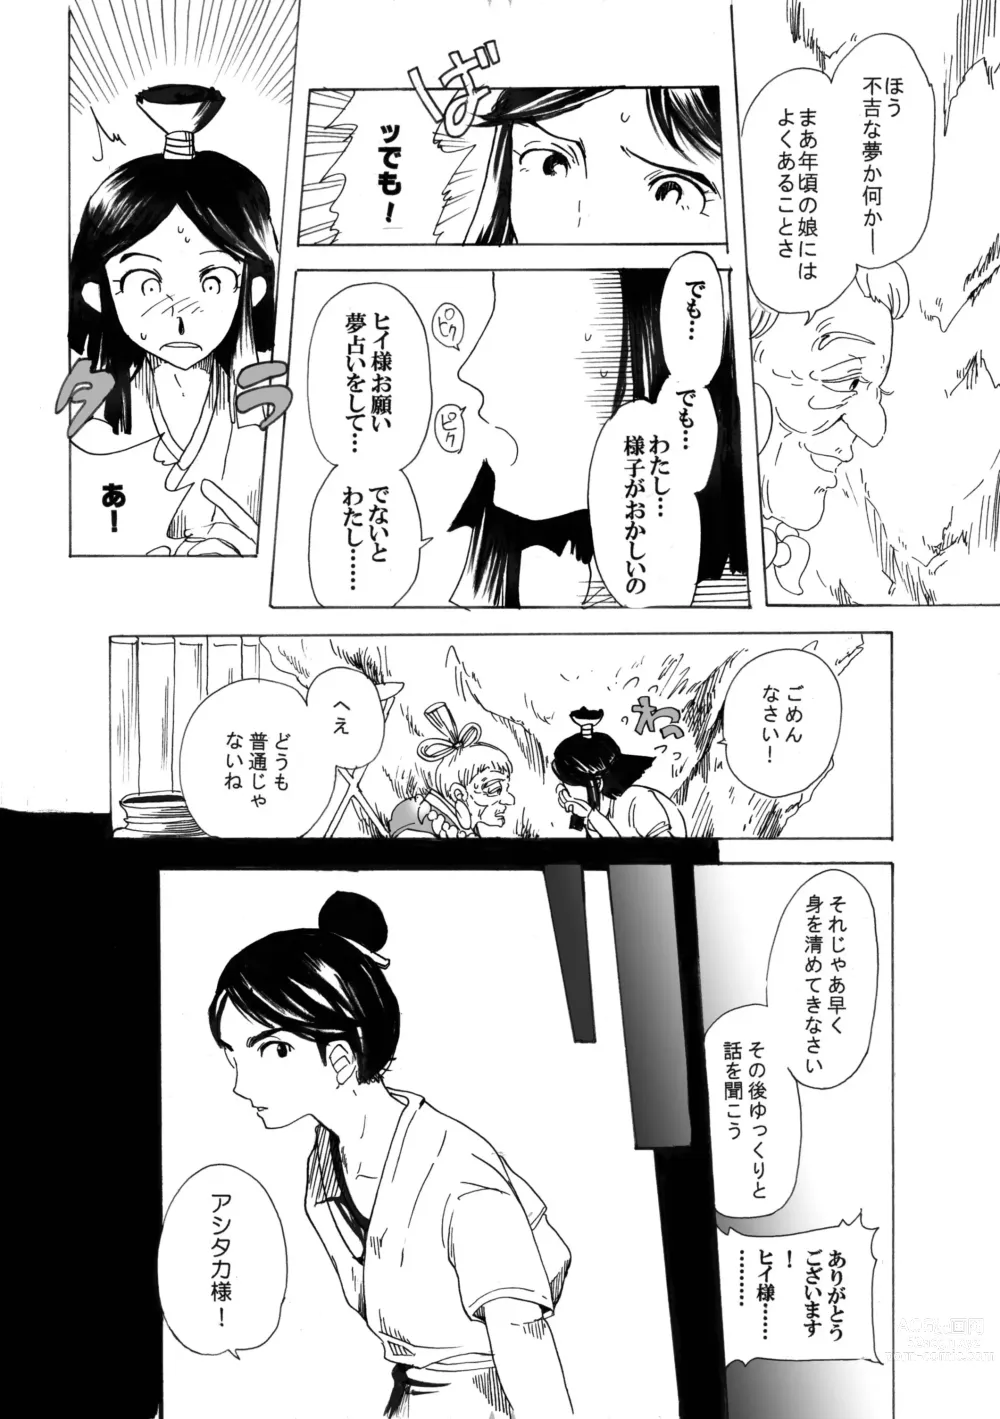 Page 6 of doujinshi Ashitaka no Mori